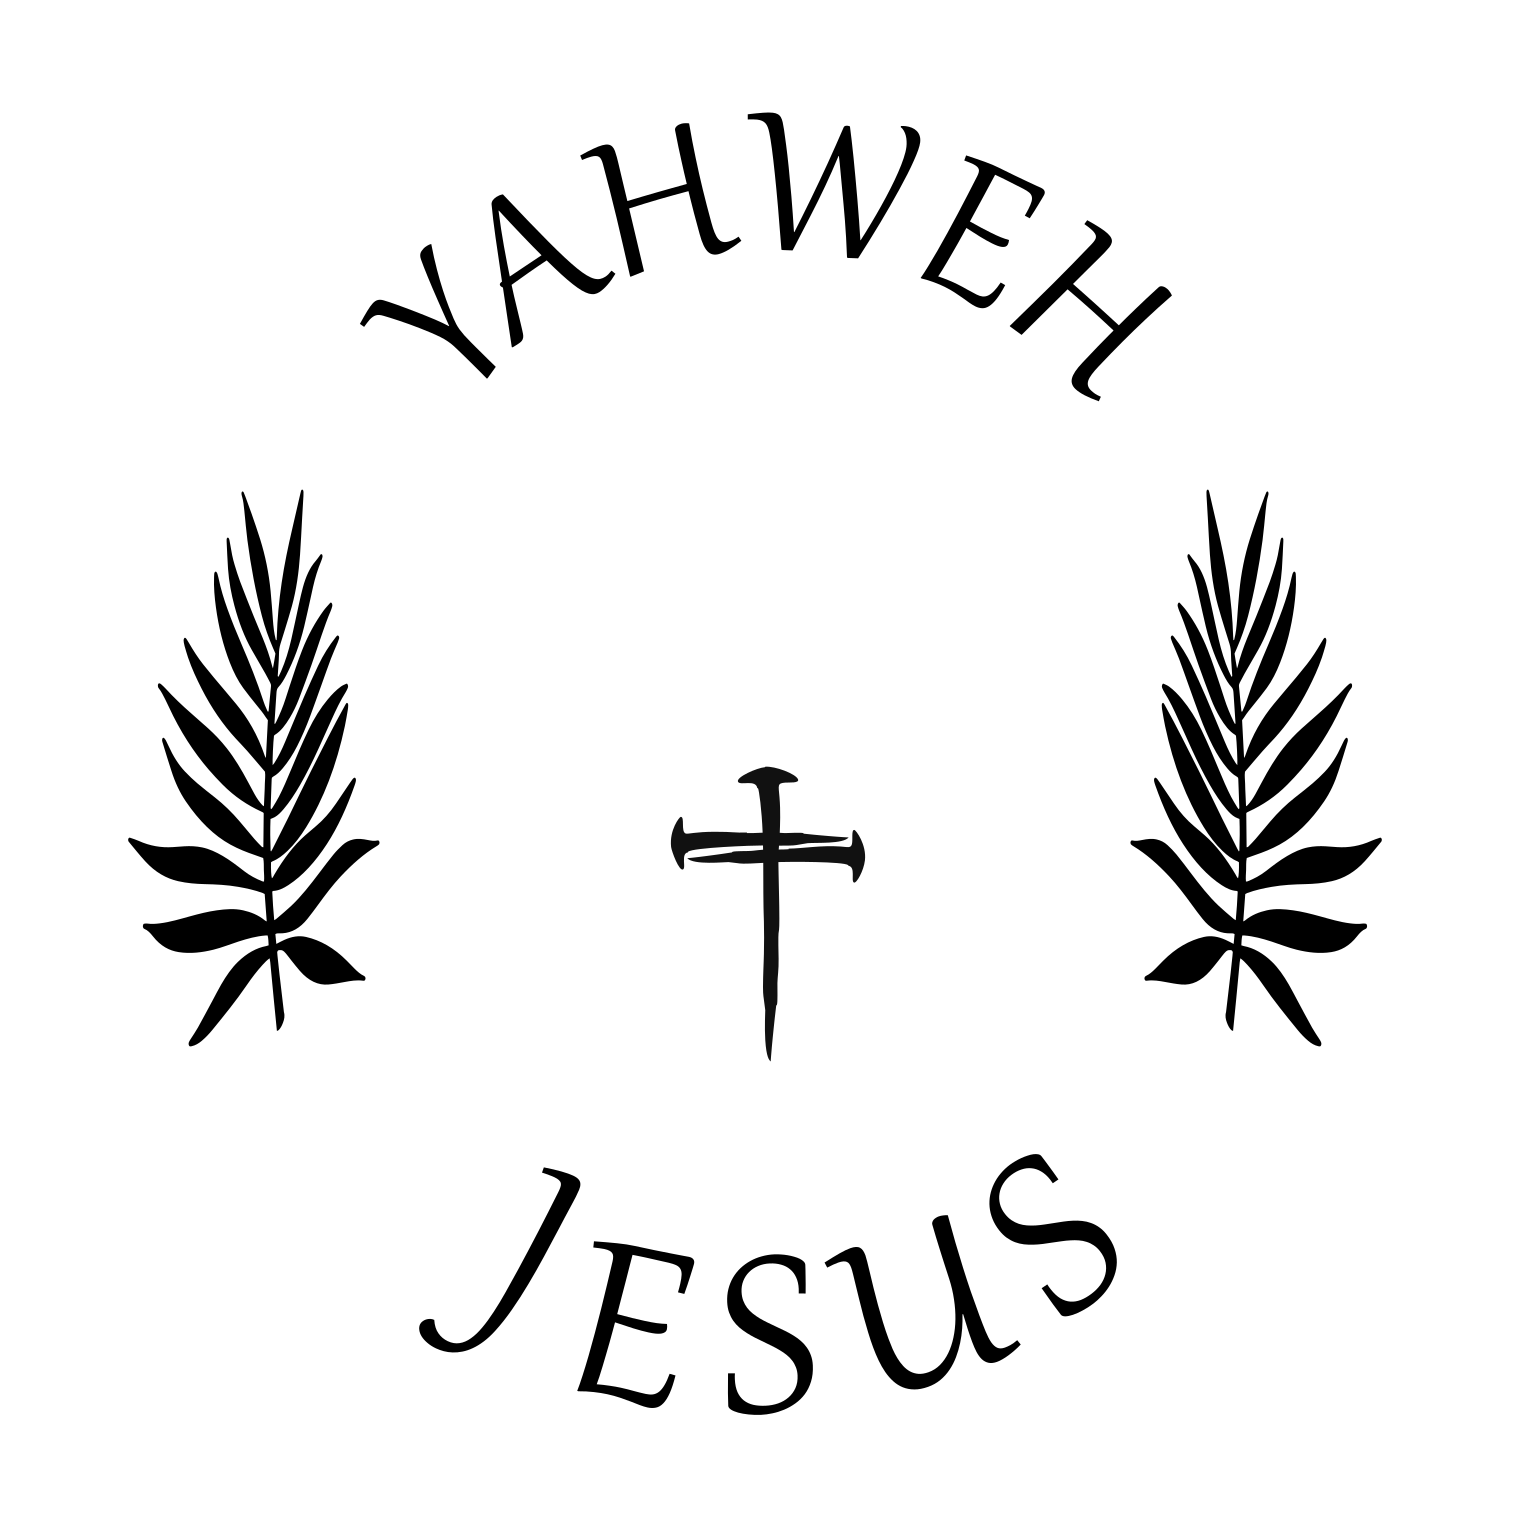 Jesus Yahweh hat burning design